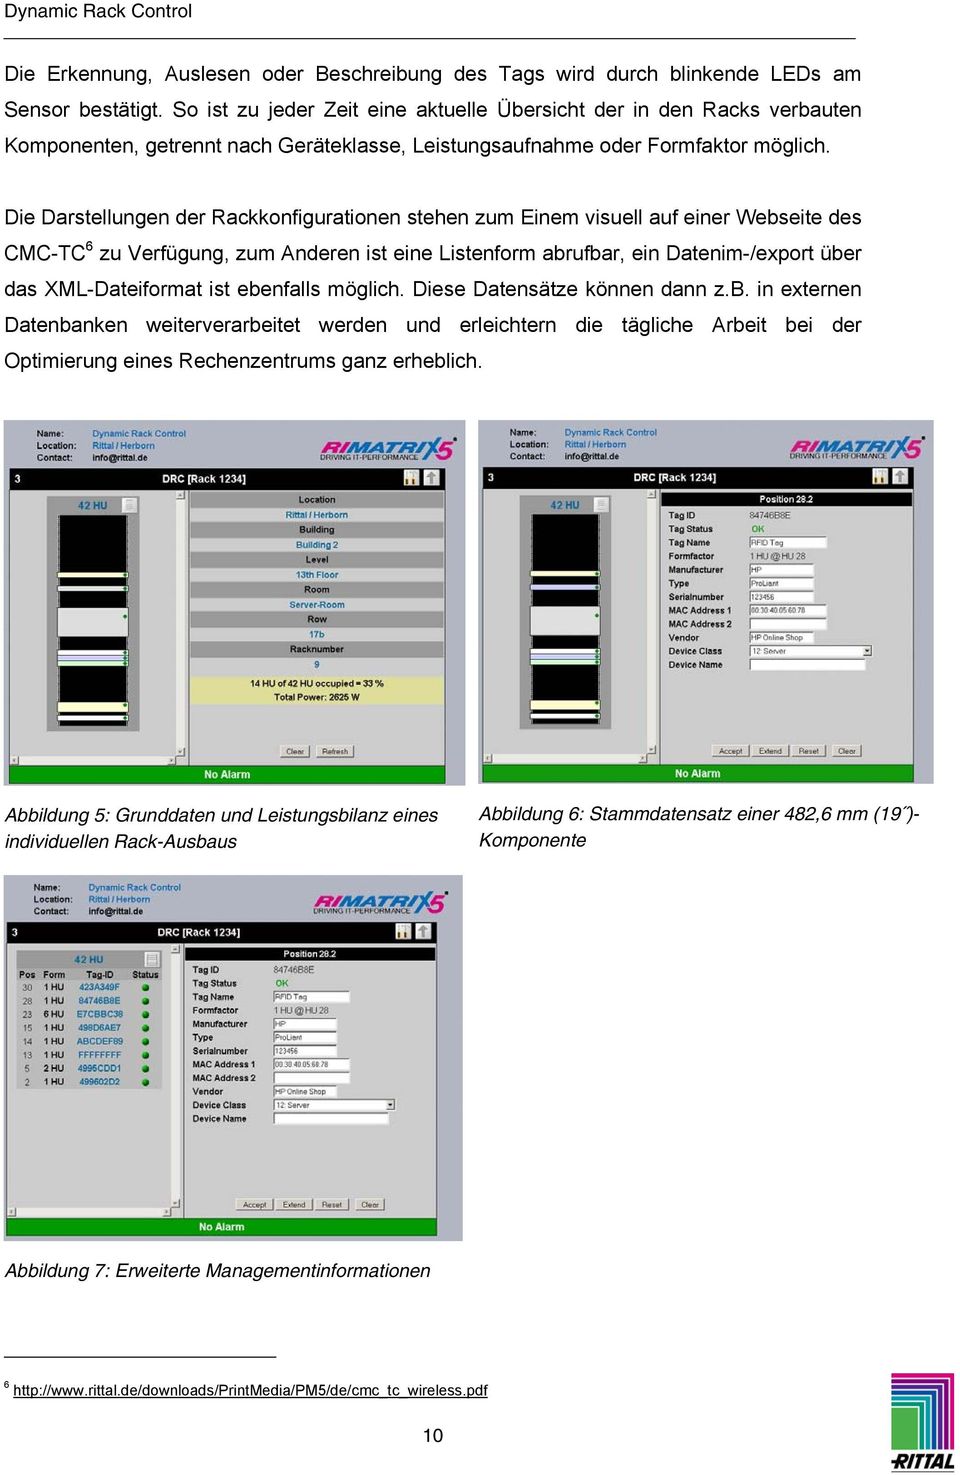 Die Darstellungen der Rackkonfigurationen stehen zum Einem visuell auf einer Webseite des CMC-TC 6 zu Verfügung, zum Anderen ist eine Listenform abrufbar, ein Datenim-/export über das XML-Dateiformat